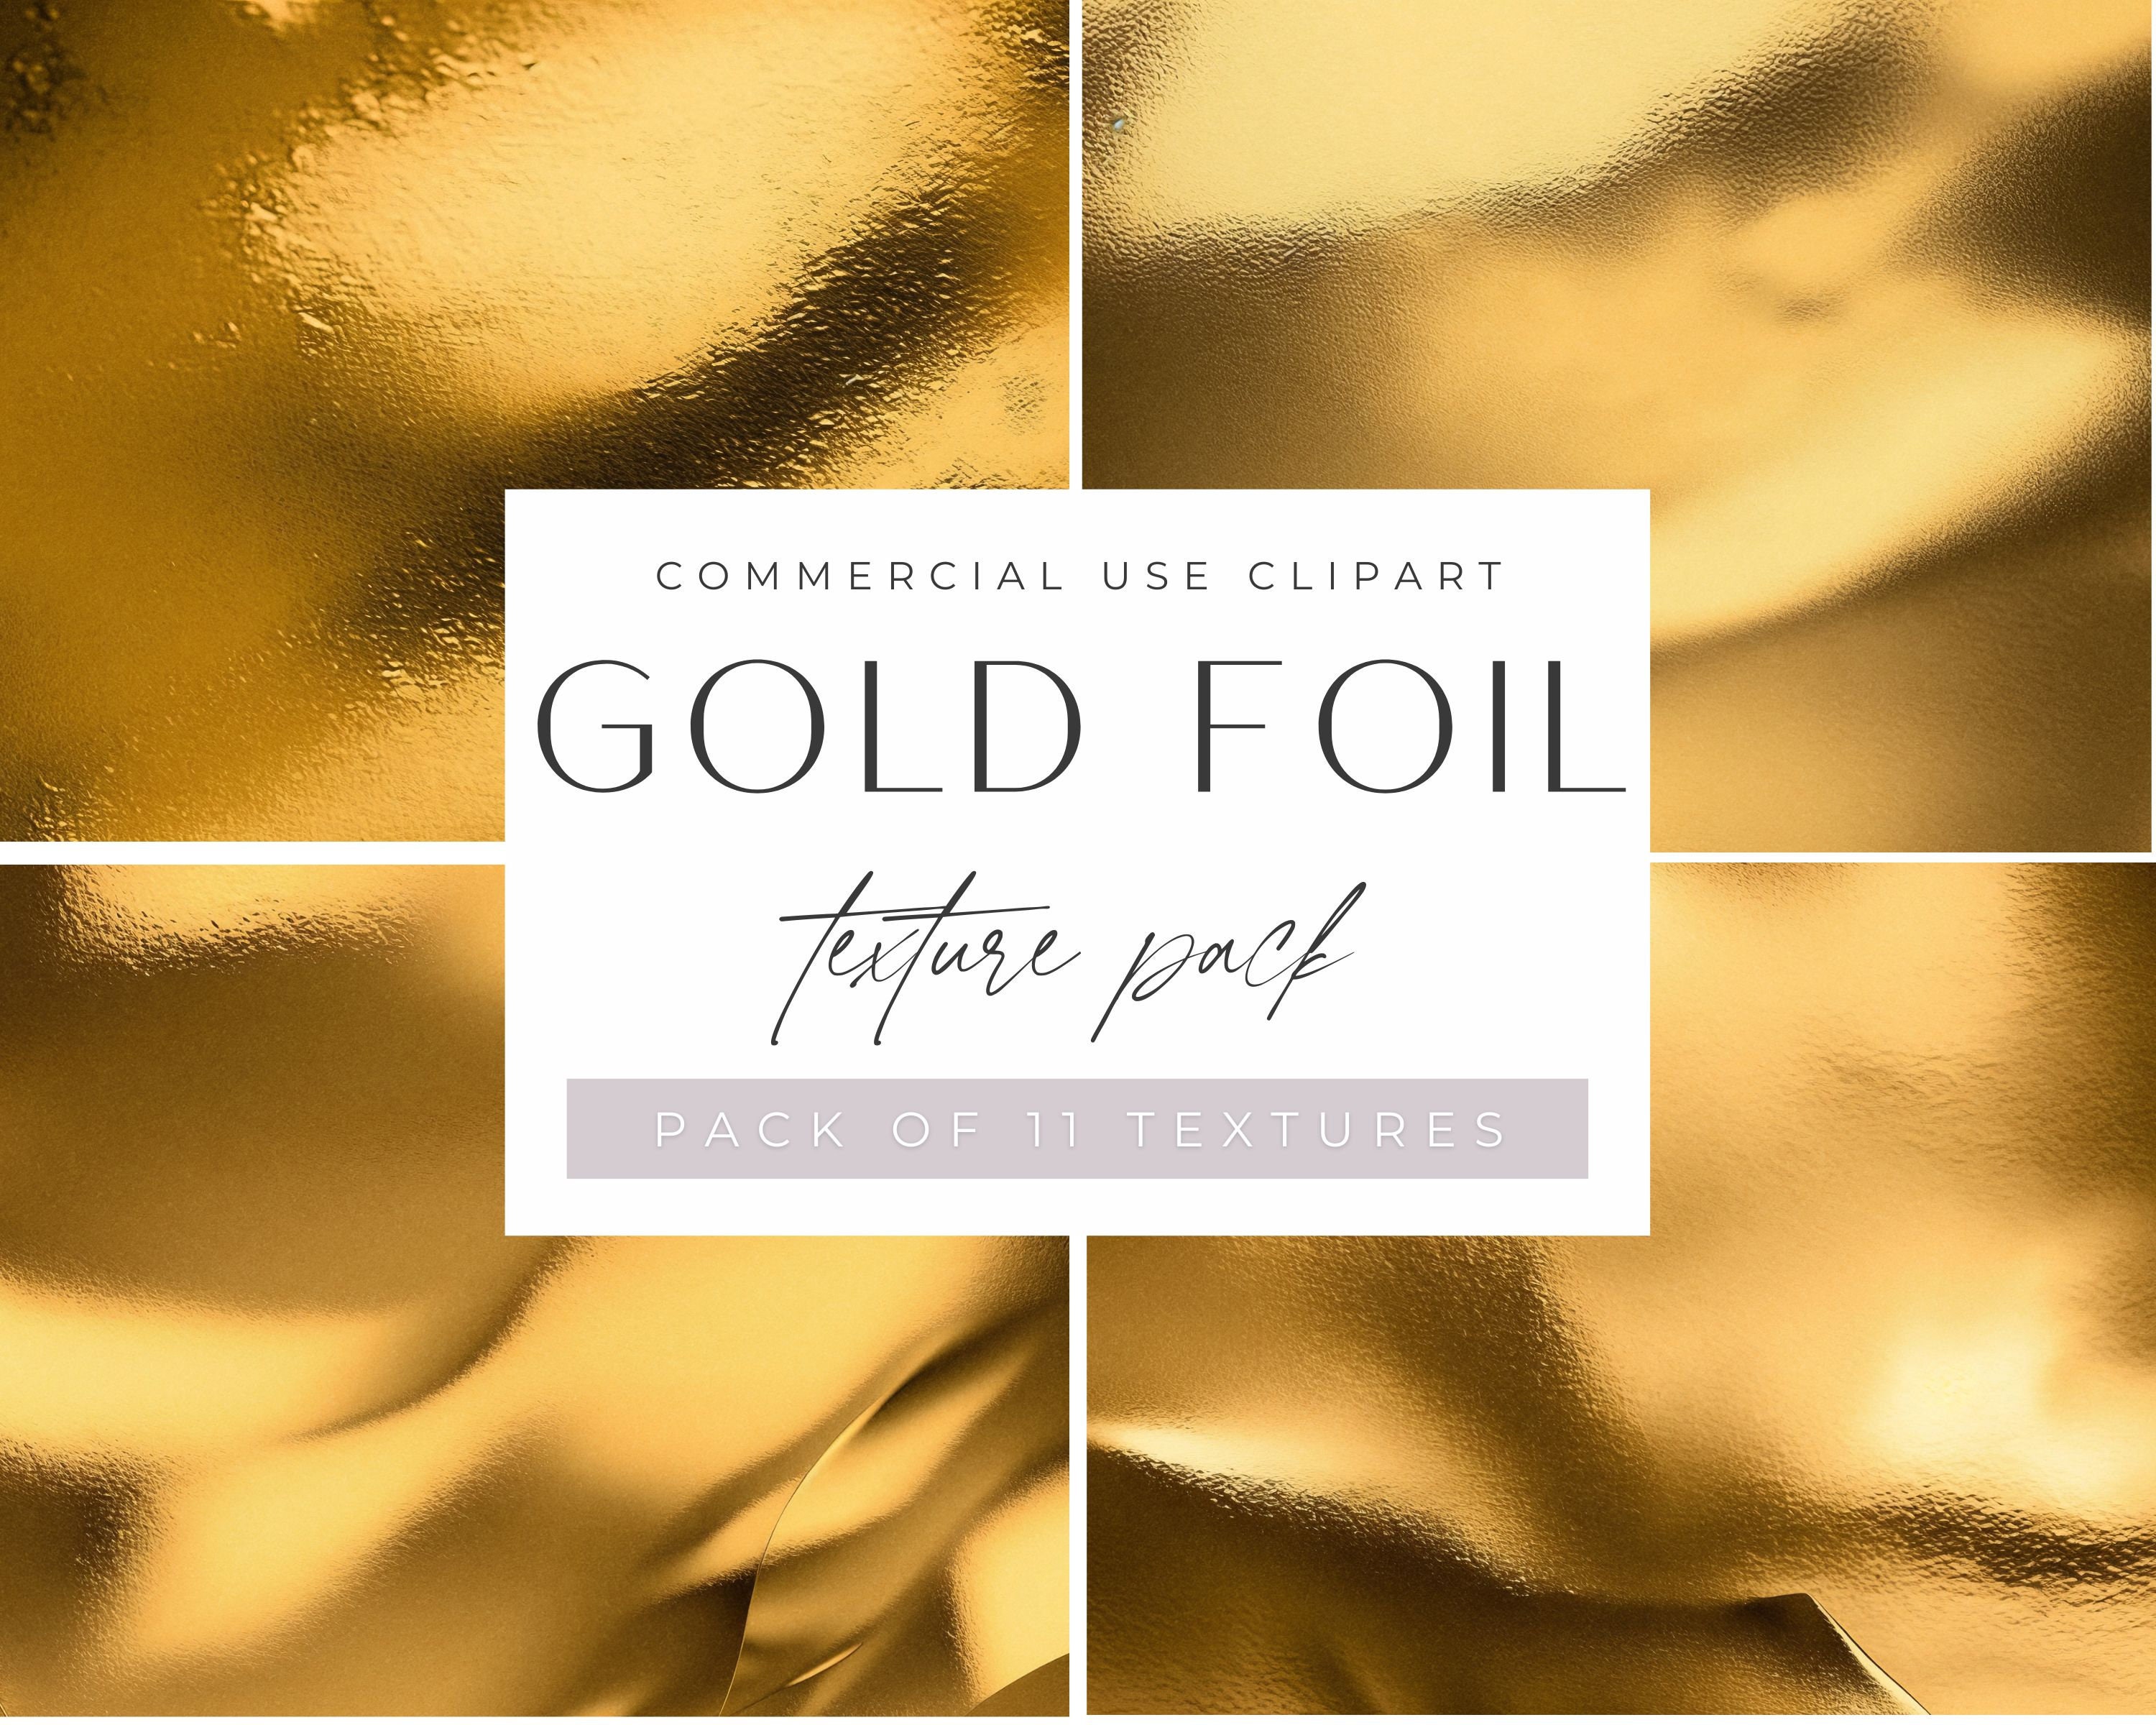 Textile Foil, Heat Transfer Foil, Foil Transfer Sheets, Hot Stamping Foil,  Siser Easyweed Adhesive, Rose Gold Foil, Iron on Foil, Rose Gold 